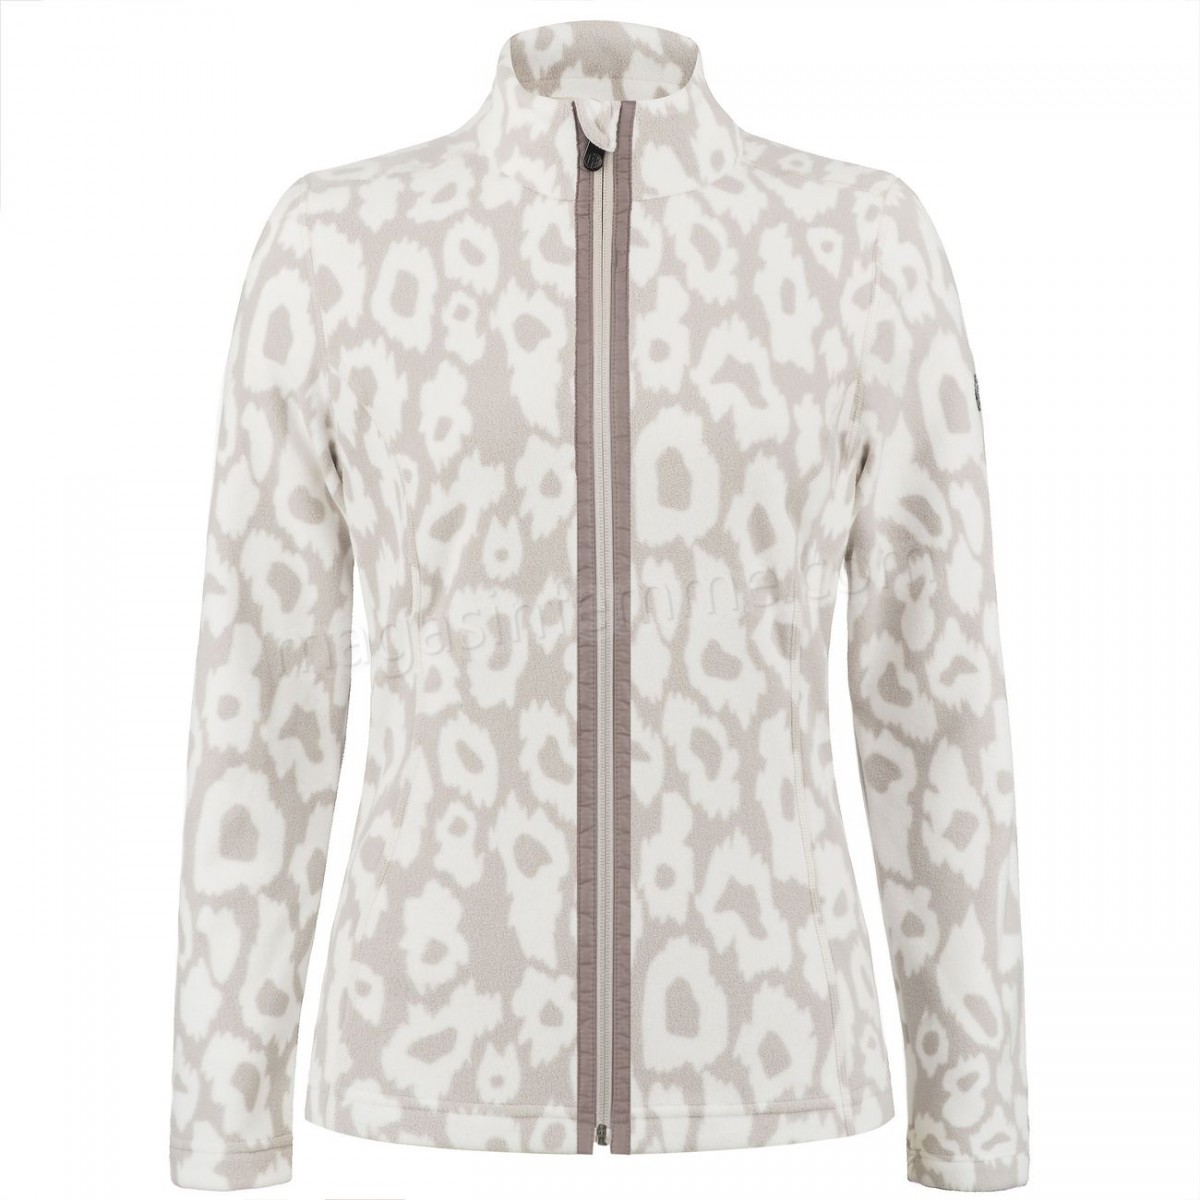 Poivre Blanc-Sports d'hiver femme POIVRE BLANC Veste Polaire Poivre Blanc Fleece Jacket 1500 Panther Grey Femme en solde - -2